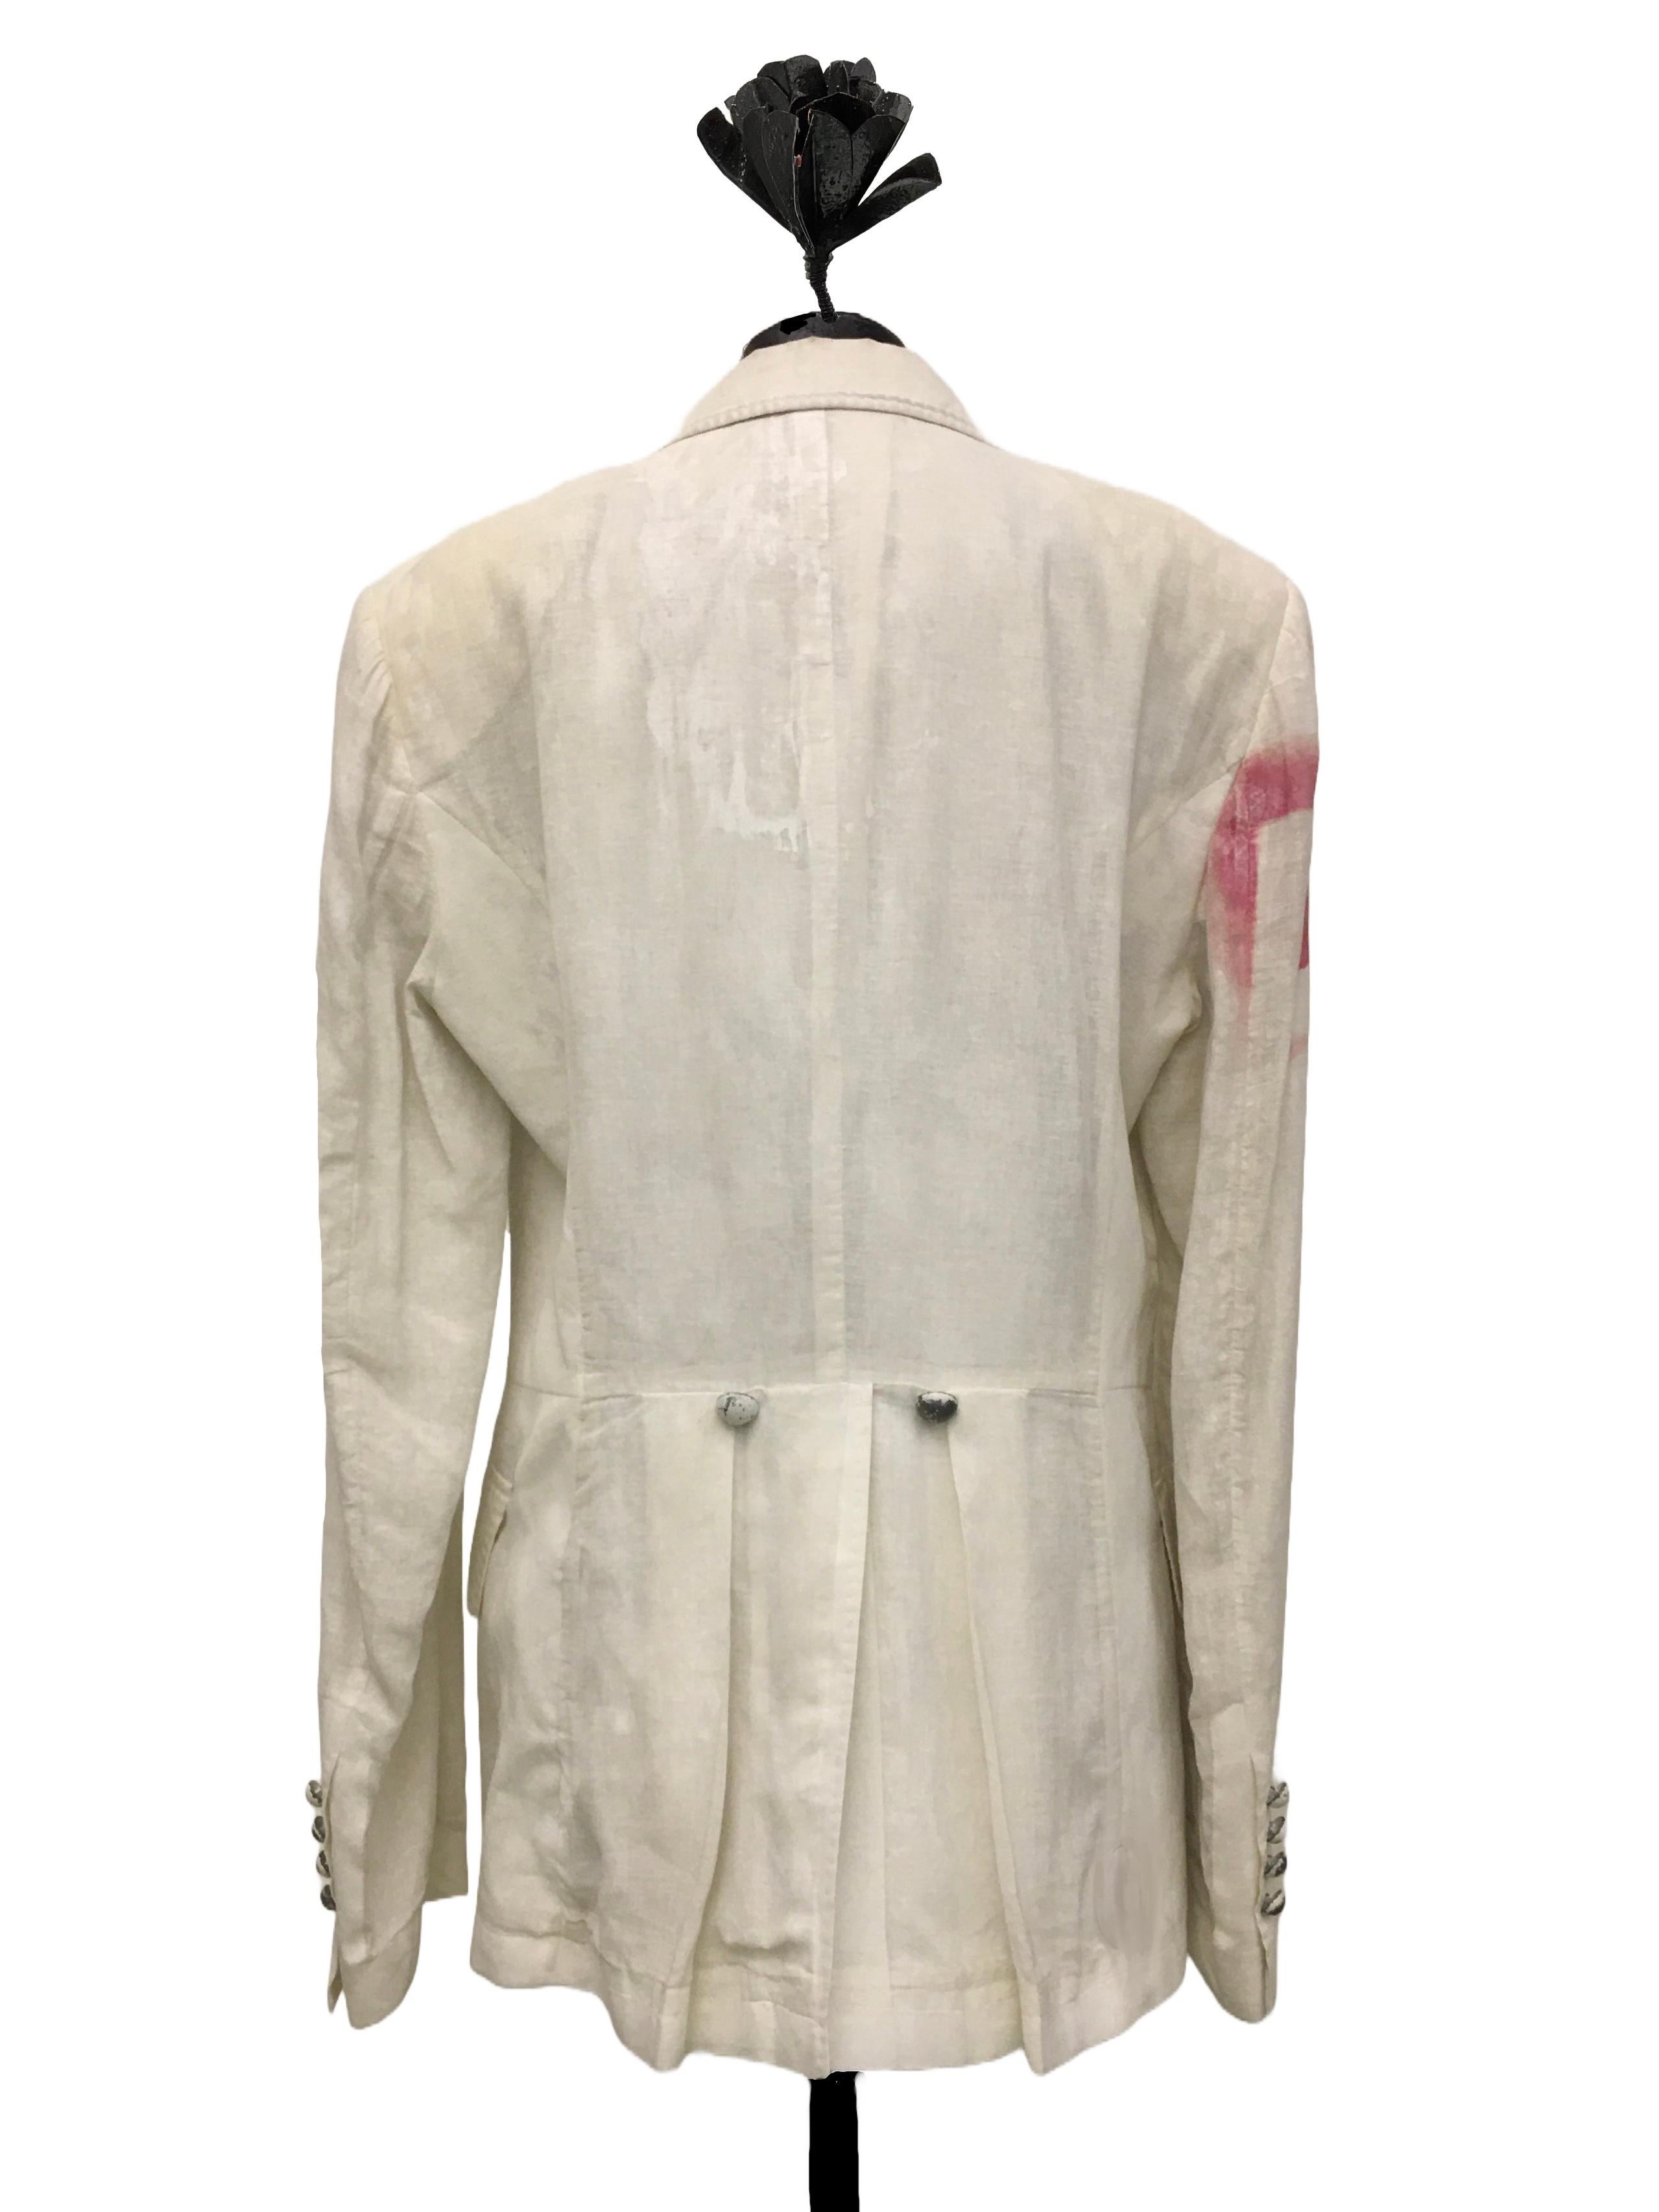 JOHN GALLIANO Blazer militare bianco panna in cotone collezione uomo SS 2008 For Sale 1